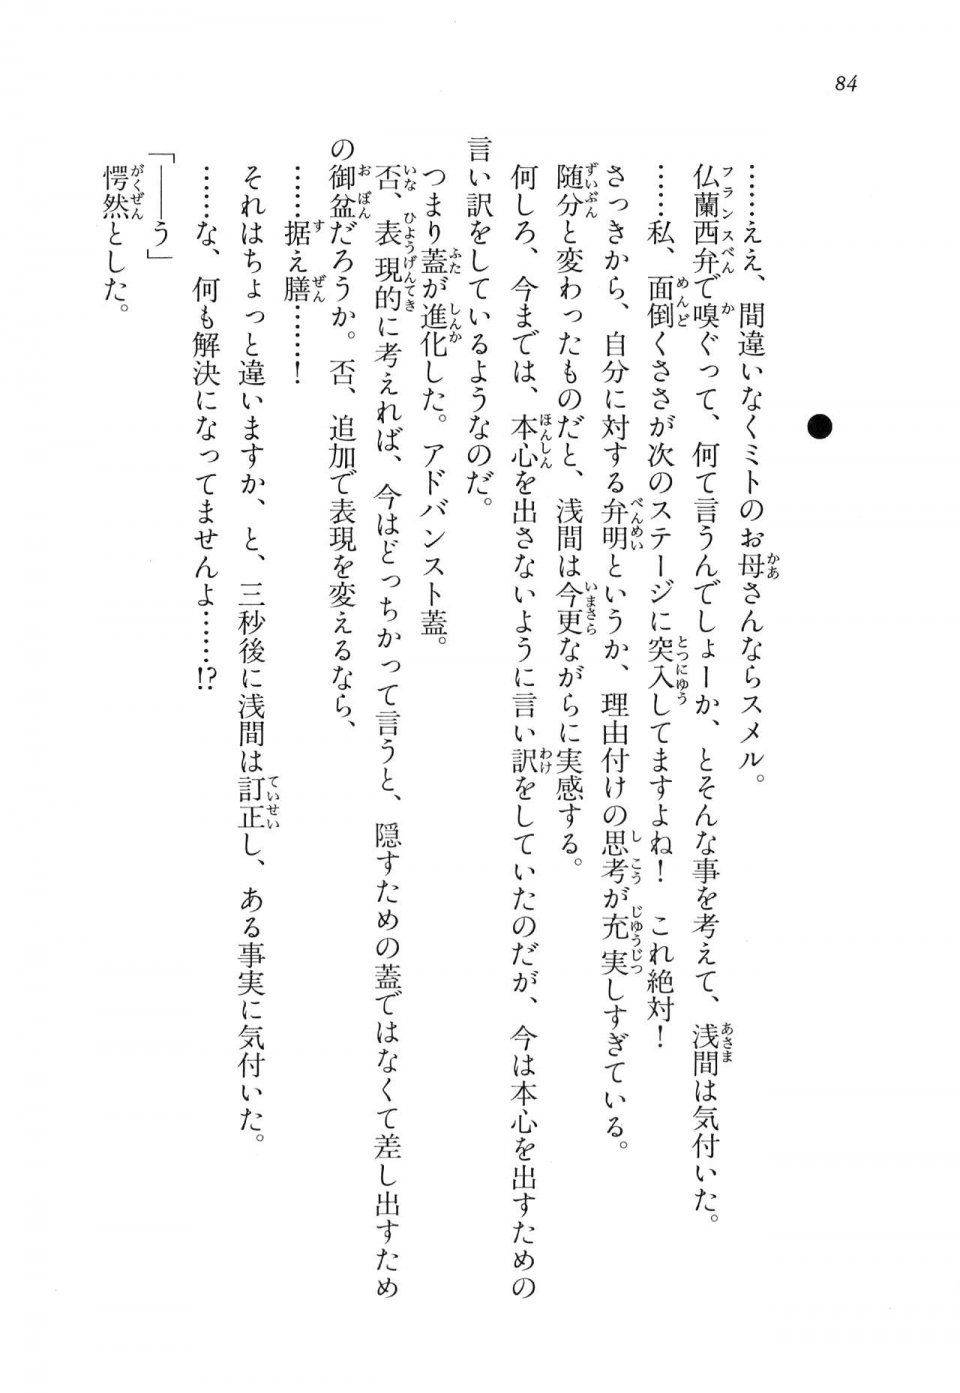 Kyoukai Senjou no Horizon LN Vol 16(7A) - Photo #84